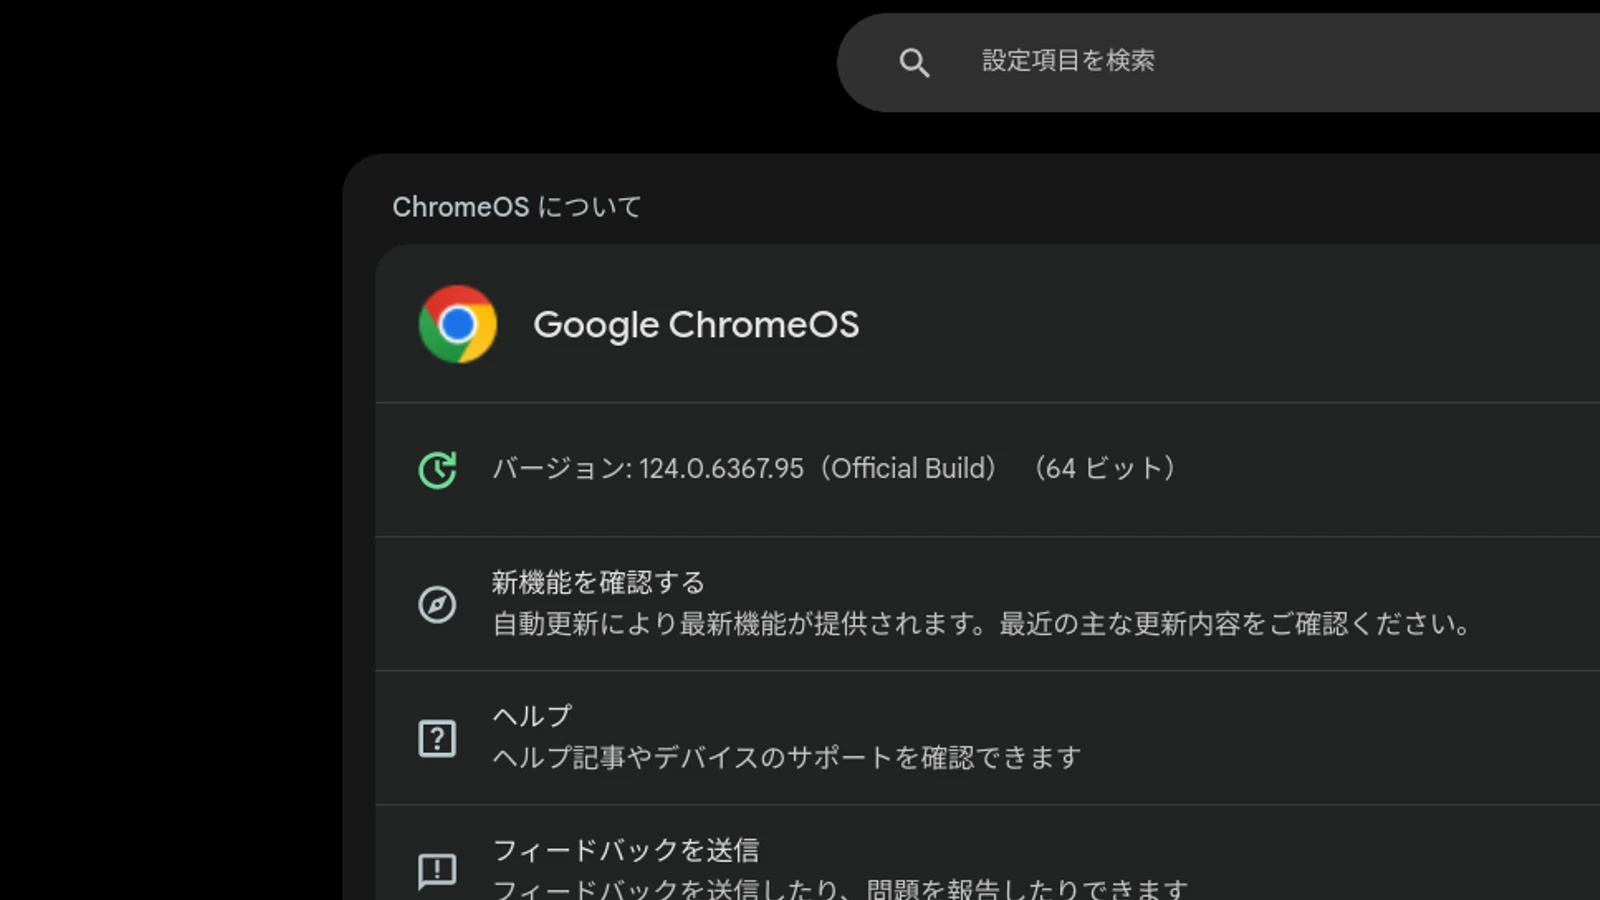 ChromeOS 124 に Chromebook がメジャーアップデートされました